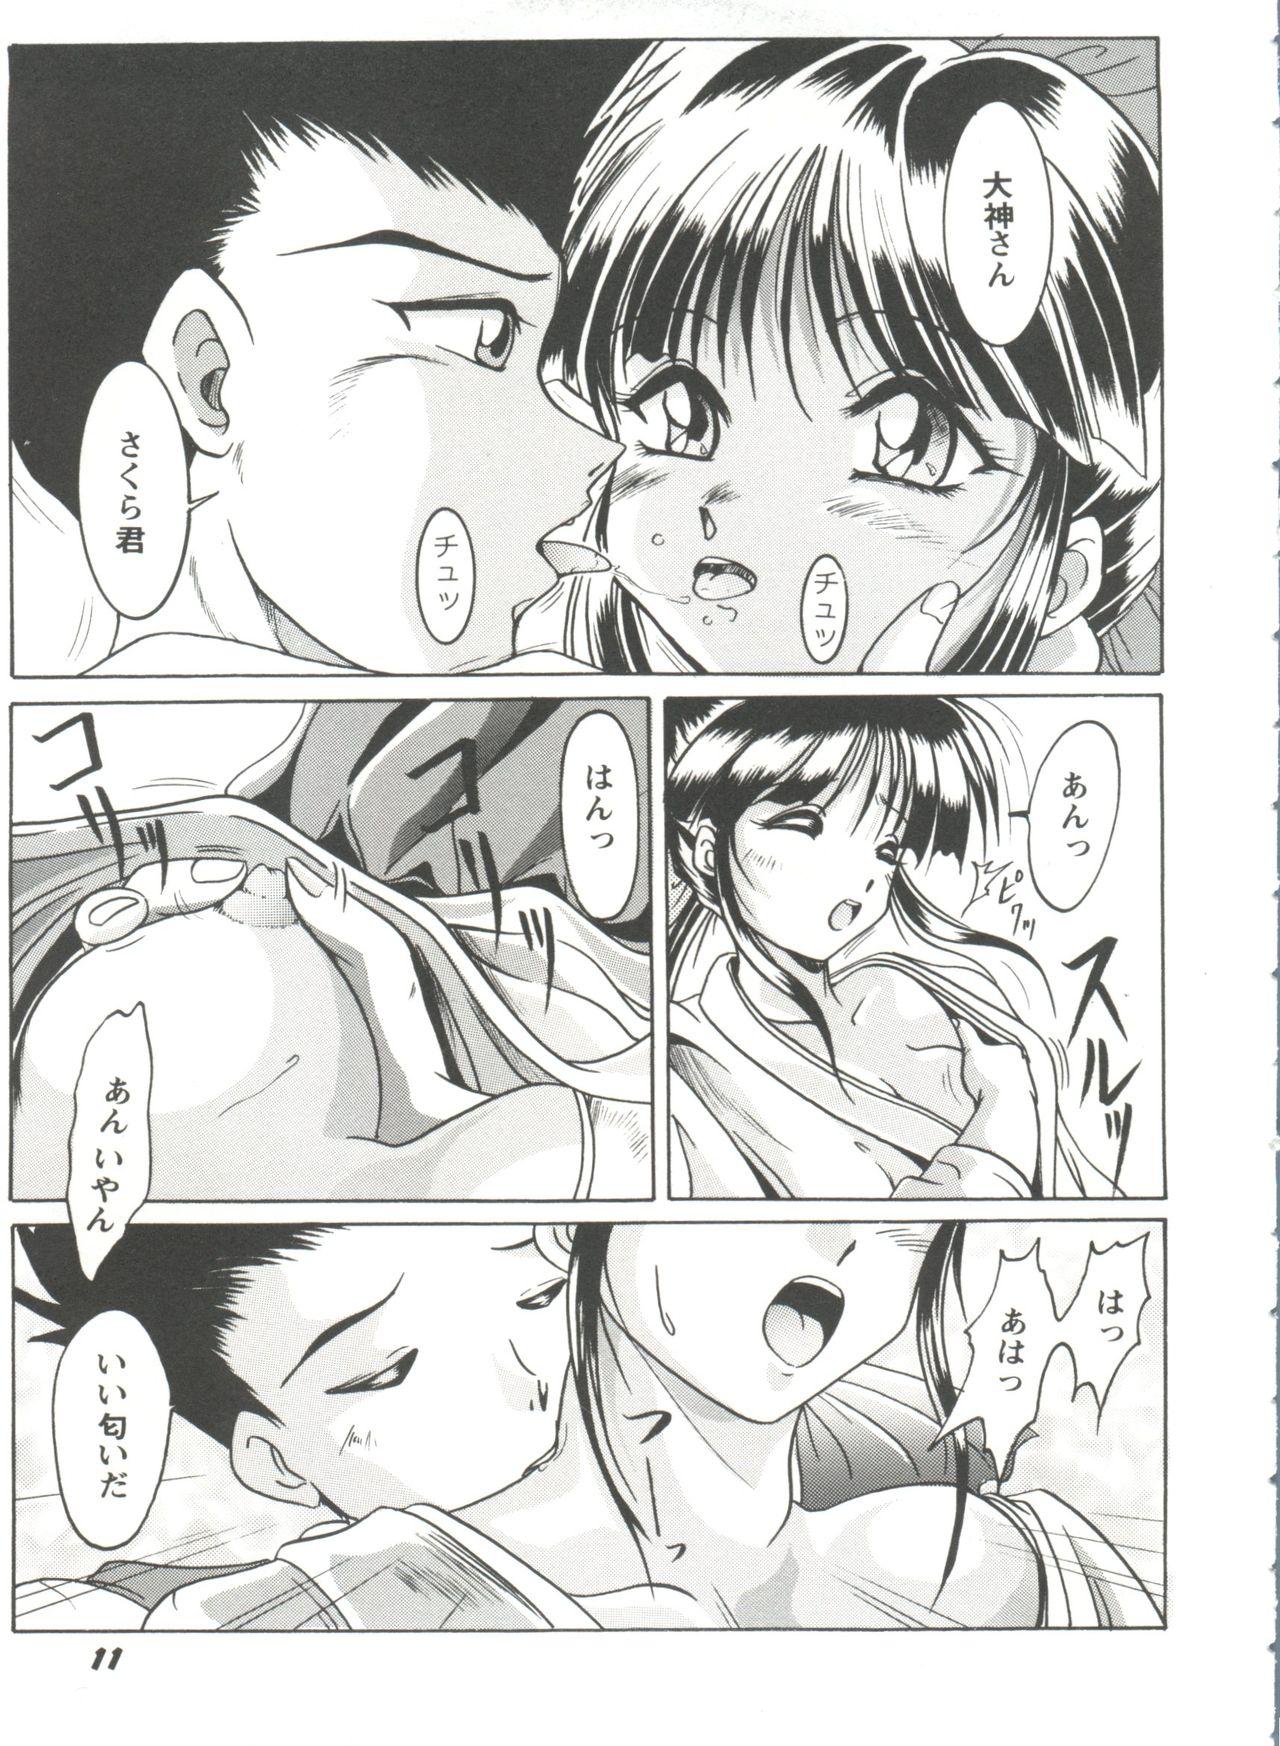 Stepfather Girl's Parade Scene 4 - Sakura taisen Martian successor nadesico Slayers Yu yu hakusho Threeway - Page 12